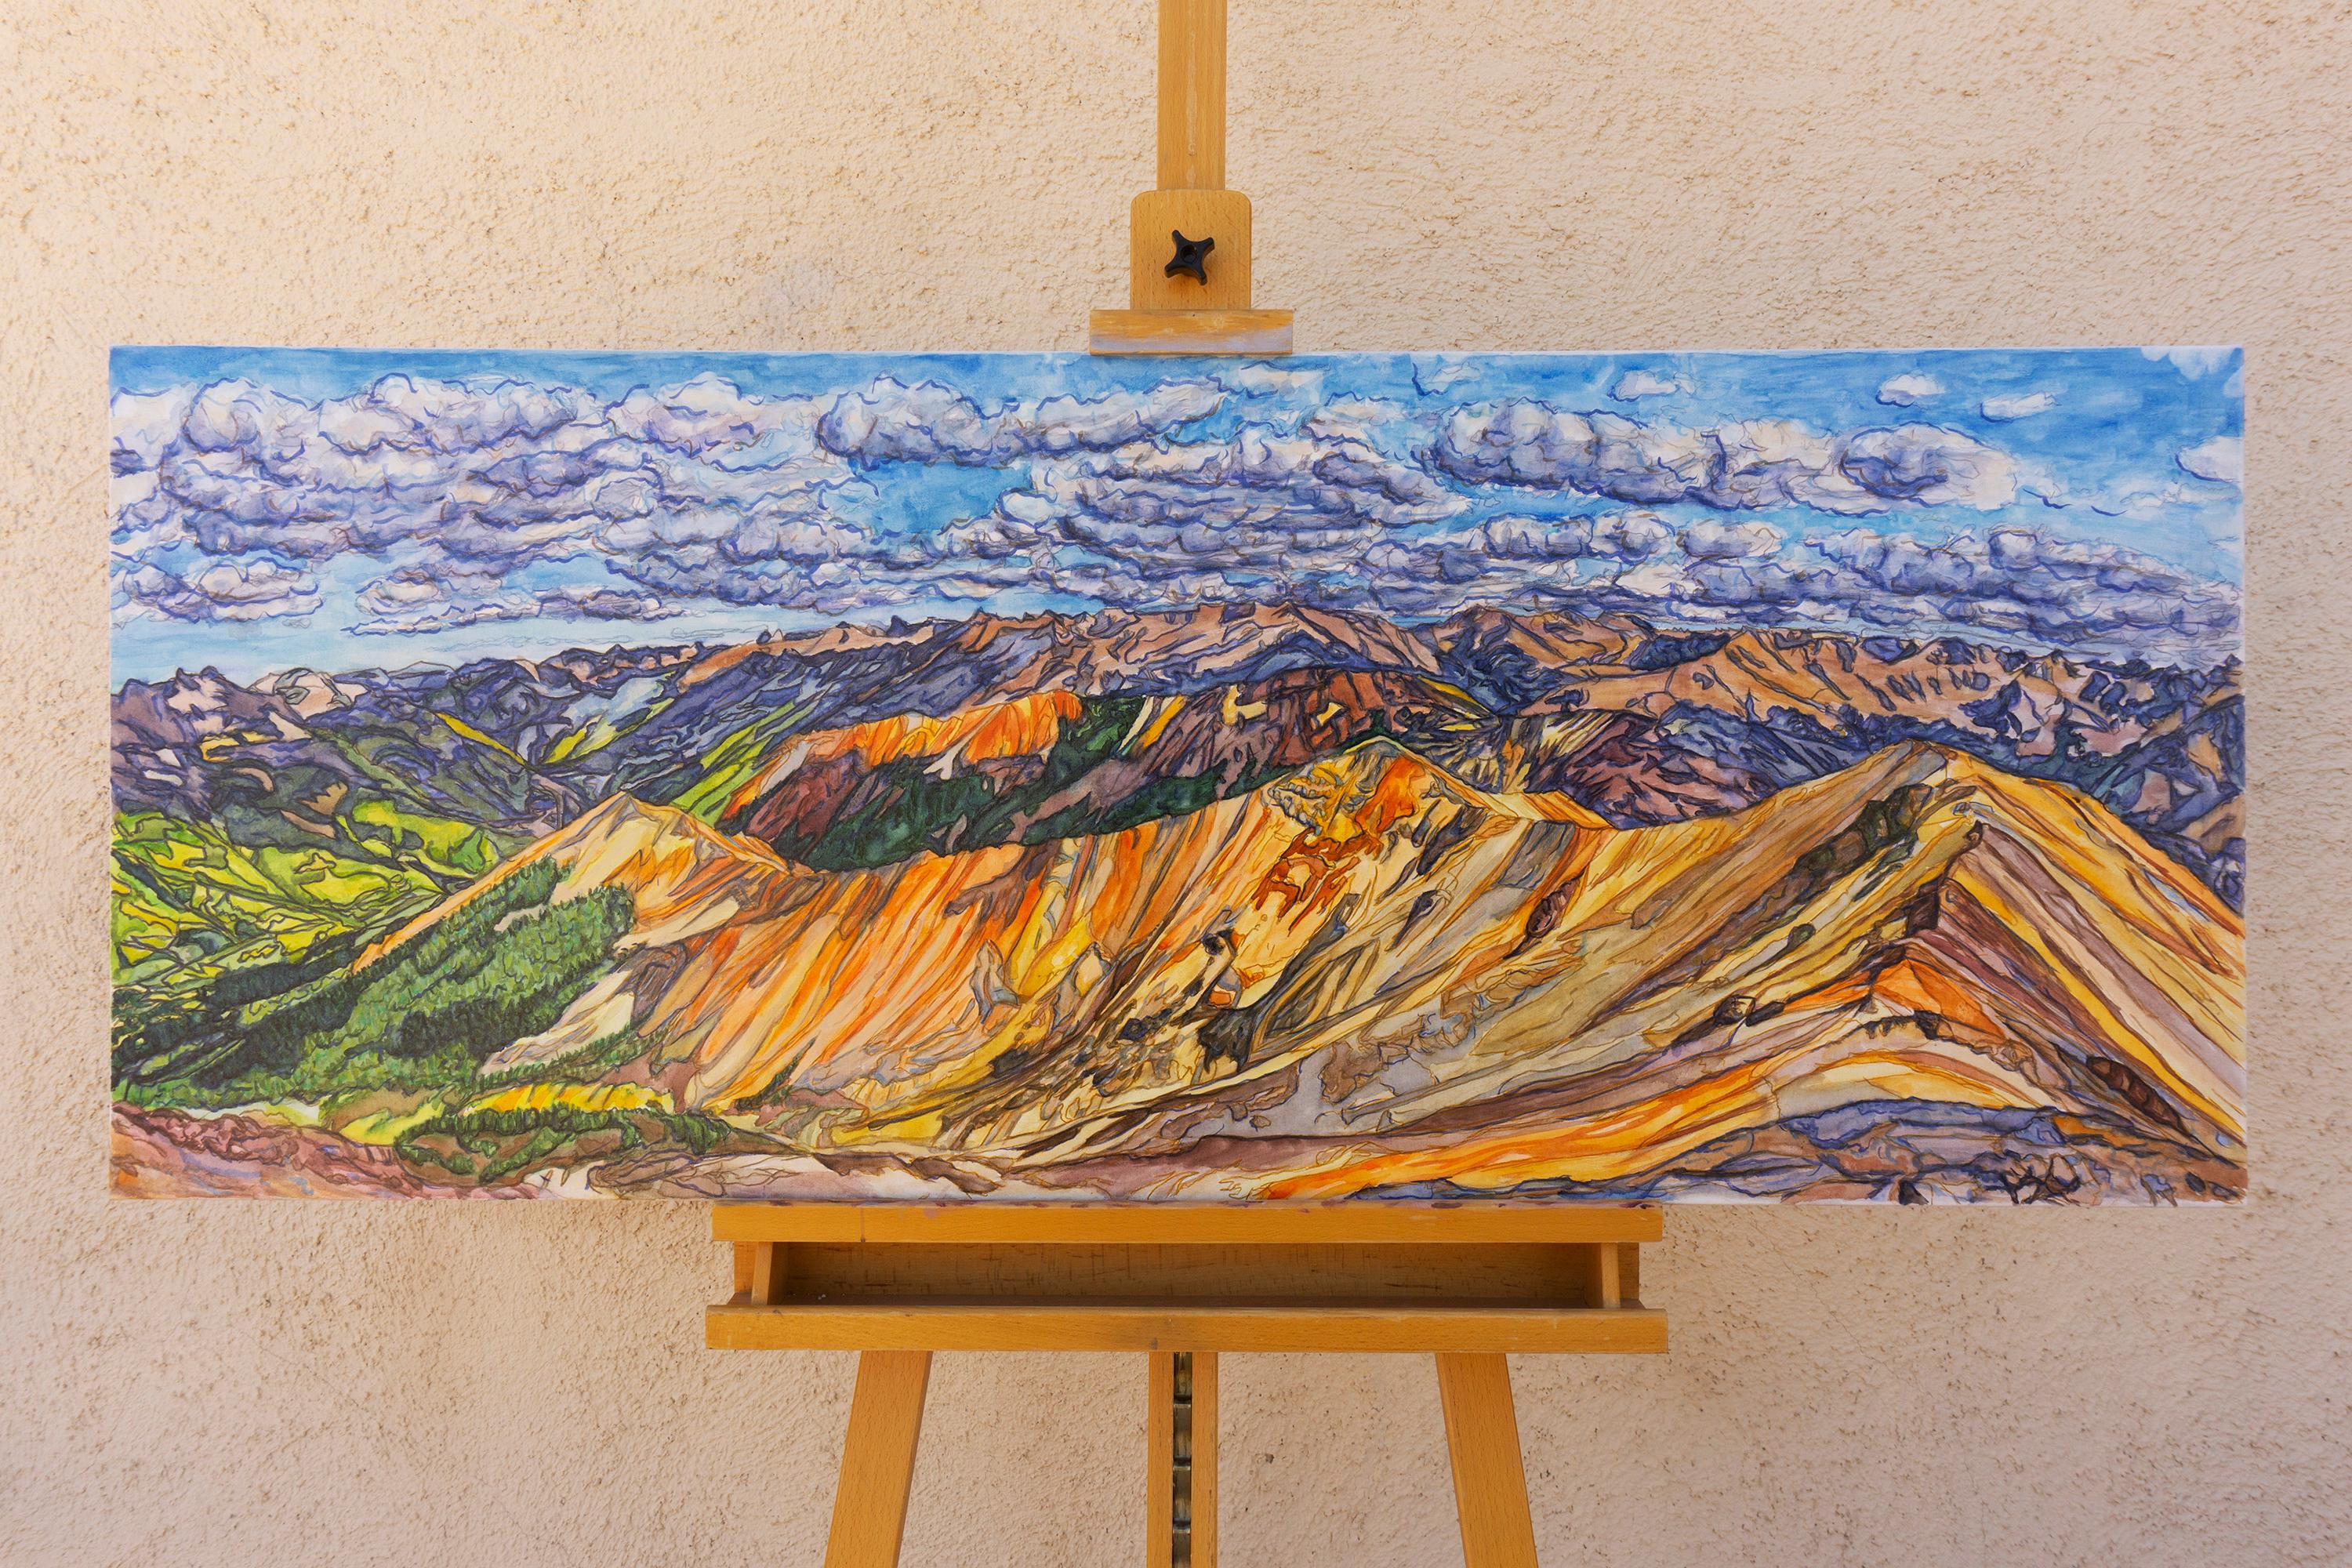 <p>Kommentare des Künstlers<br>Ein farbenprächtiges Panorama aus den San Juan Mountains in Colorado entfaltet sich in warmen Schichten, wobei die Wolken kühle blaue Schatten werfen, die im Kontrast dazu stehen. Das Grün der Bäume ergänzt die